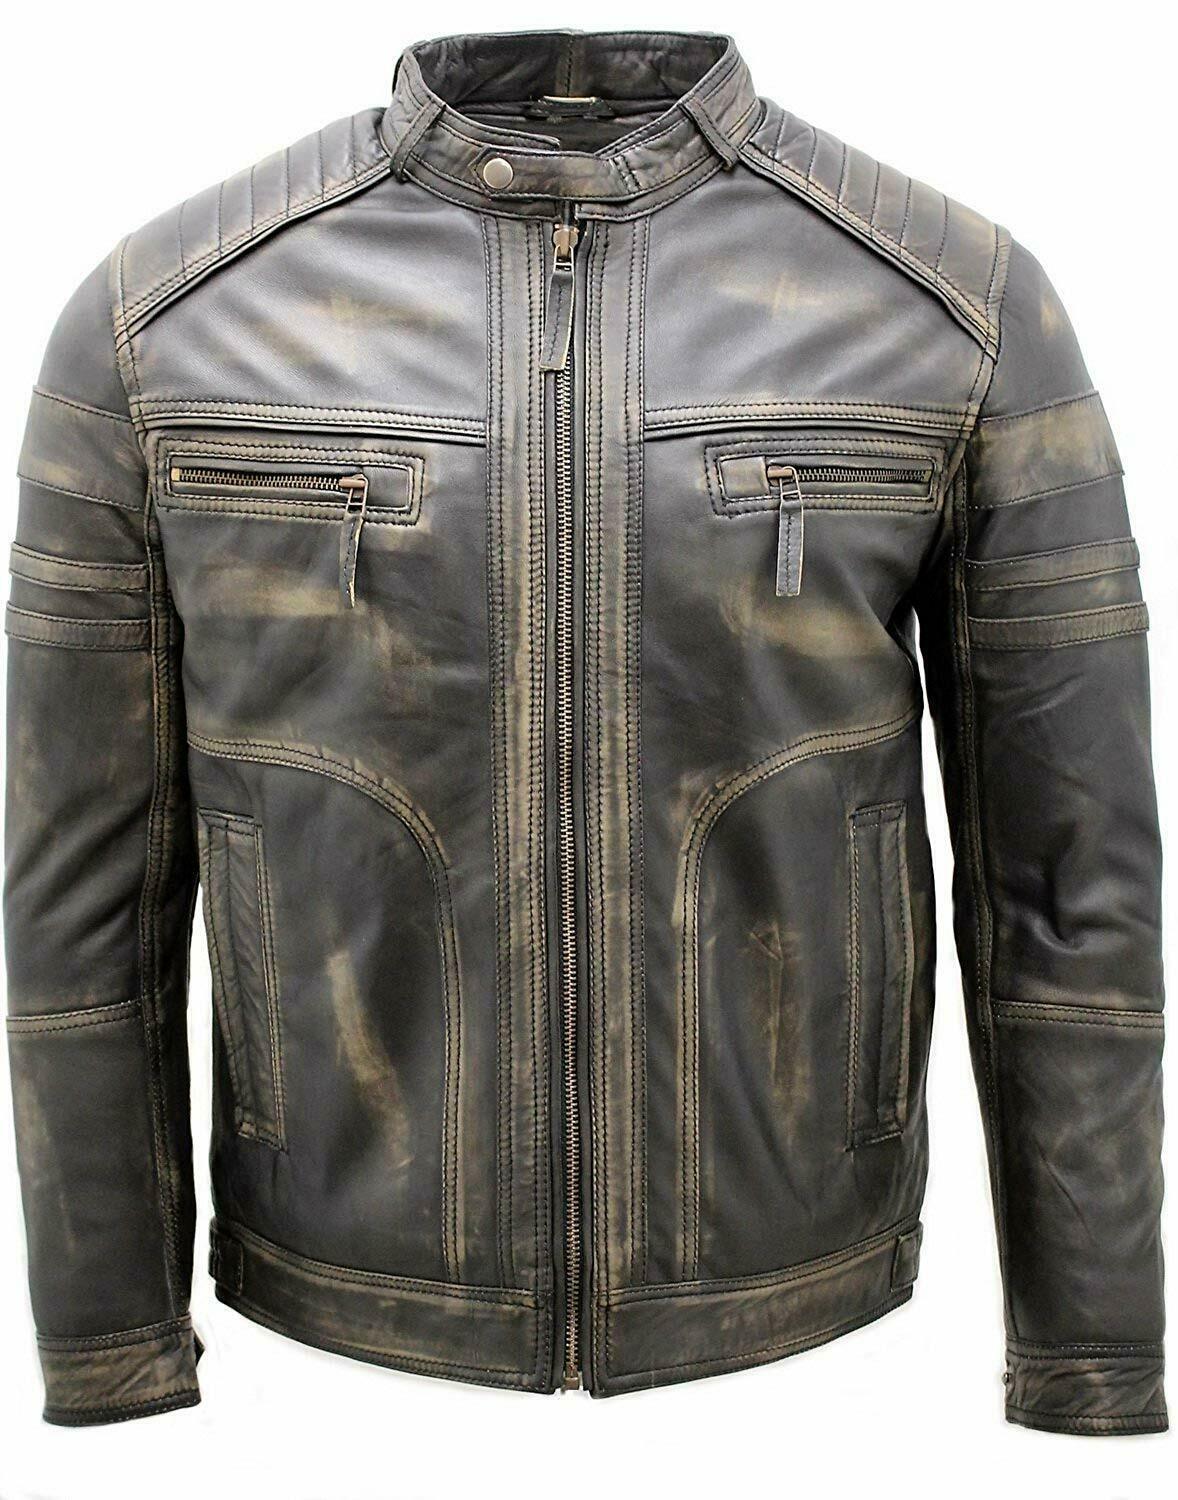 Men's Vintage Black Distressed Leather Jacket Faded Biker Jacket